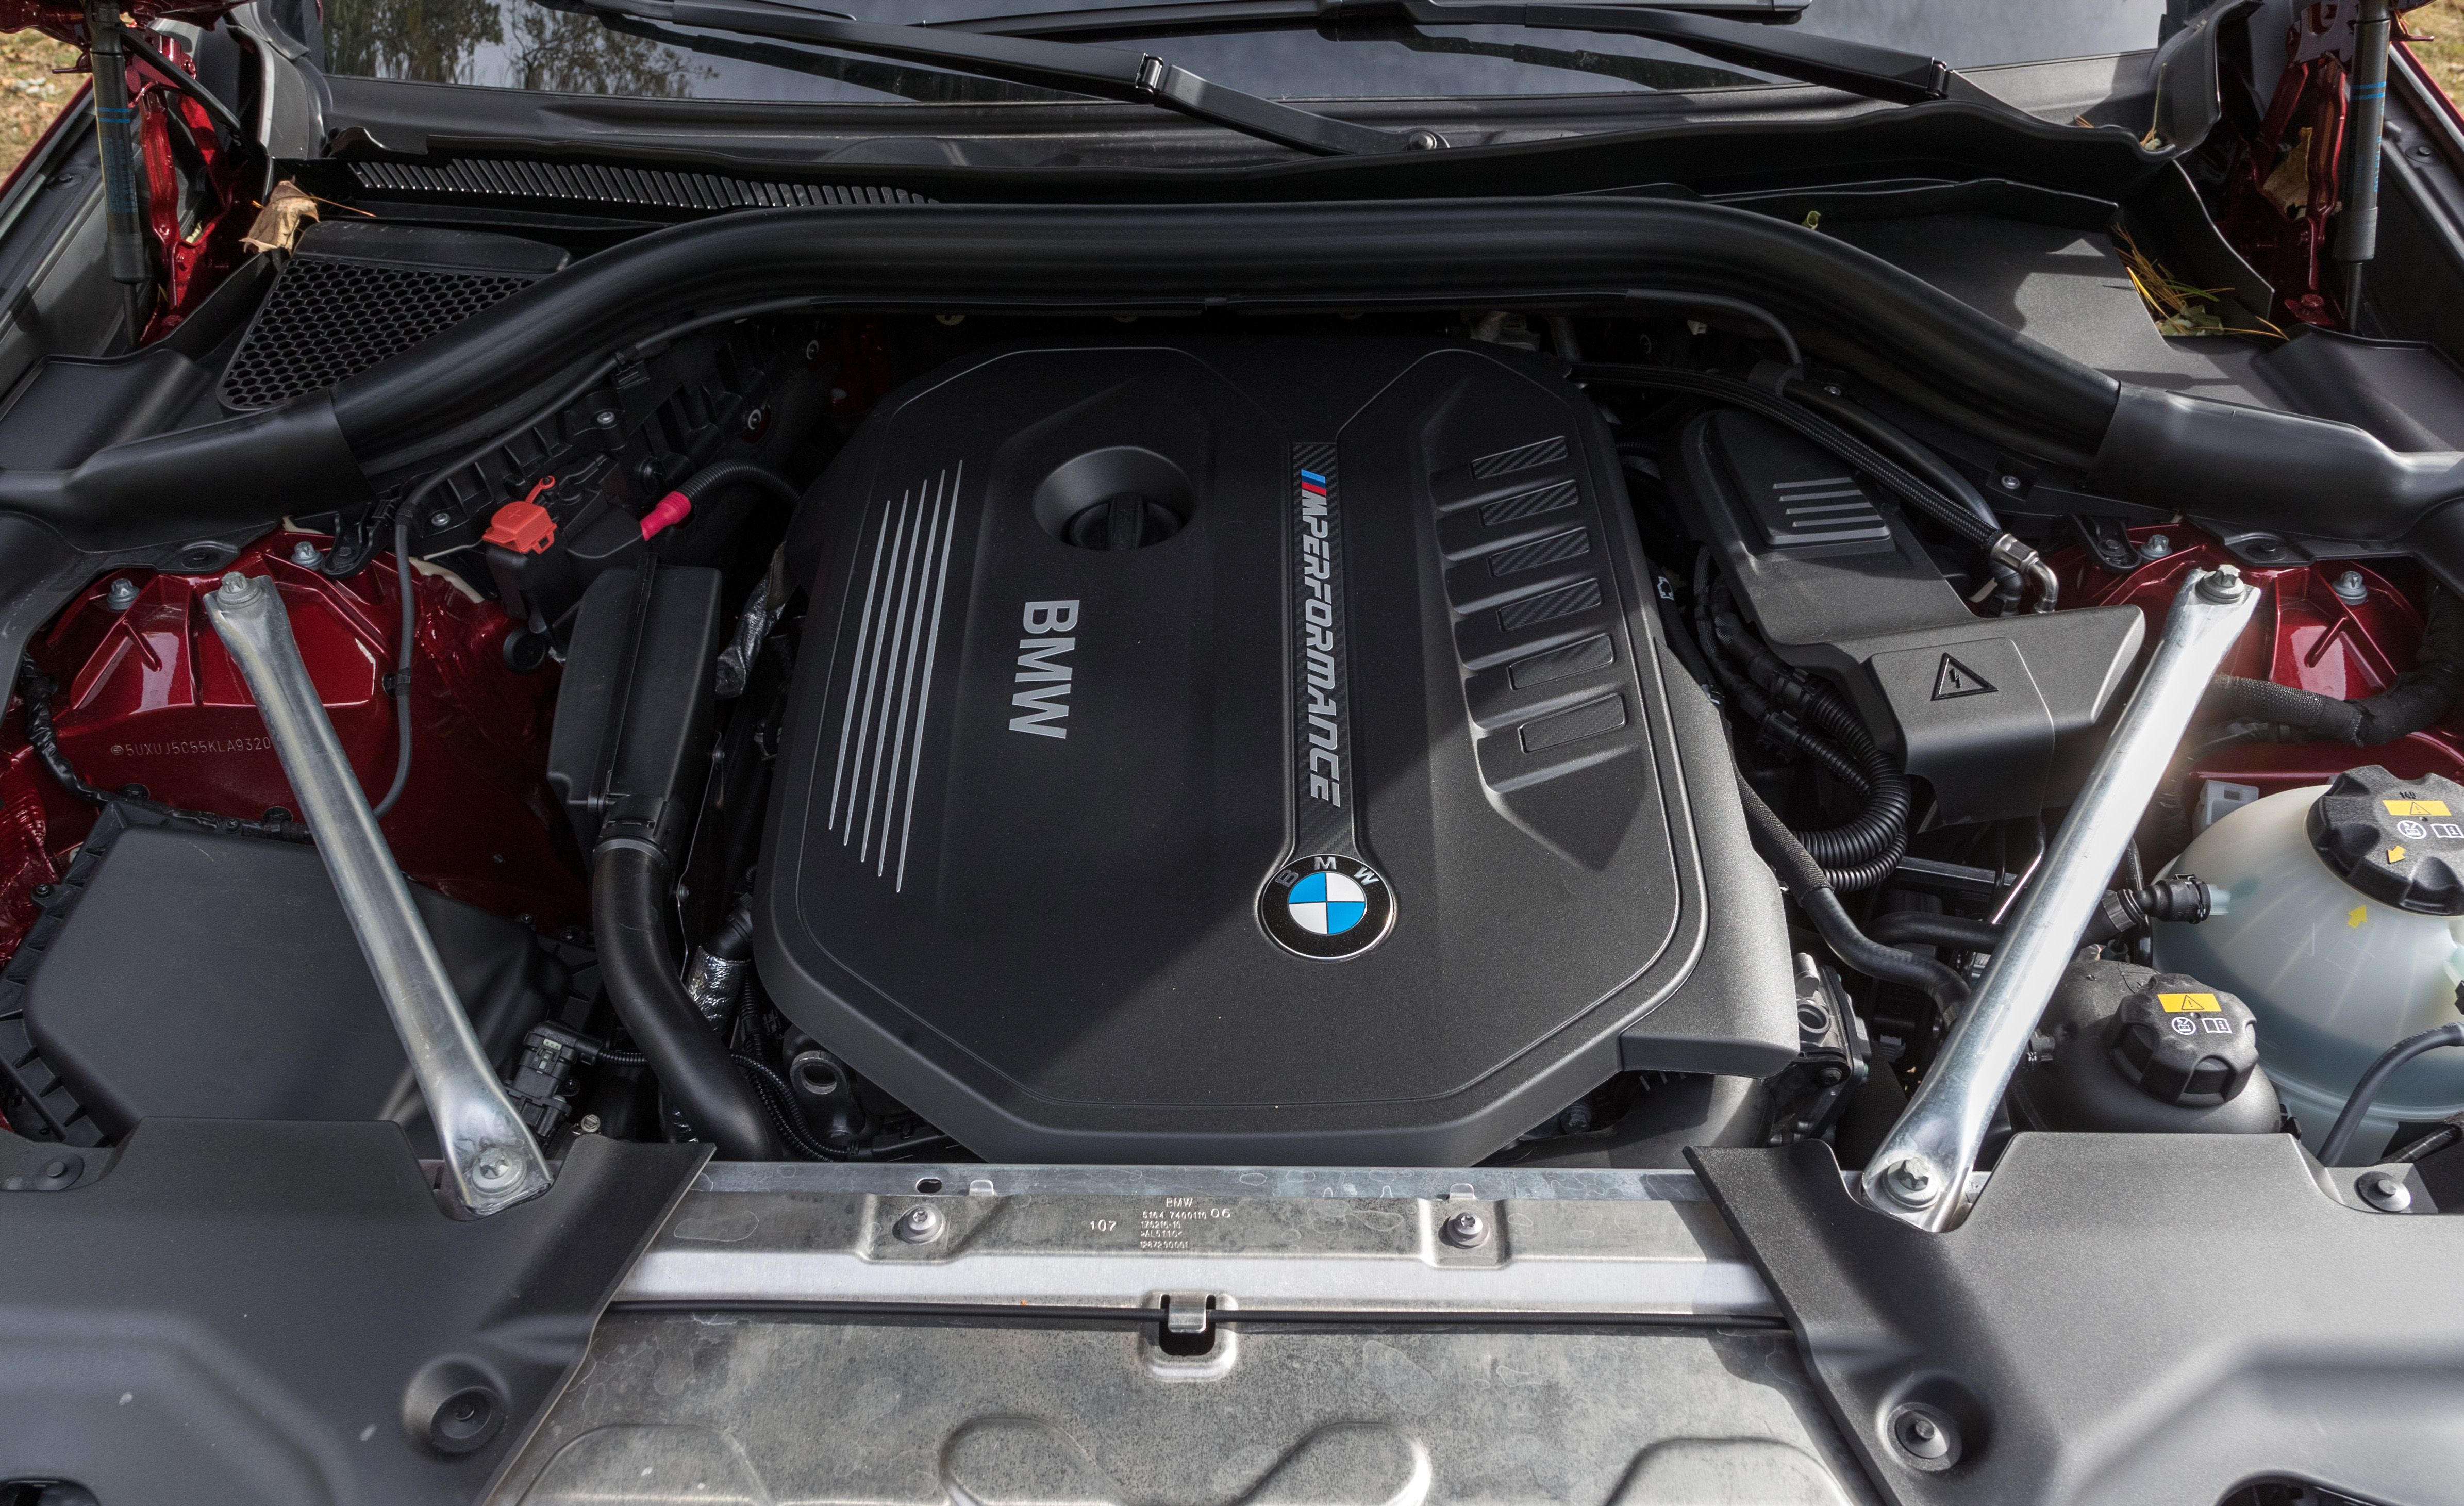 Essai du BMW X4 2019, Essais routiers